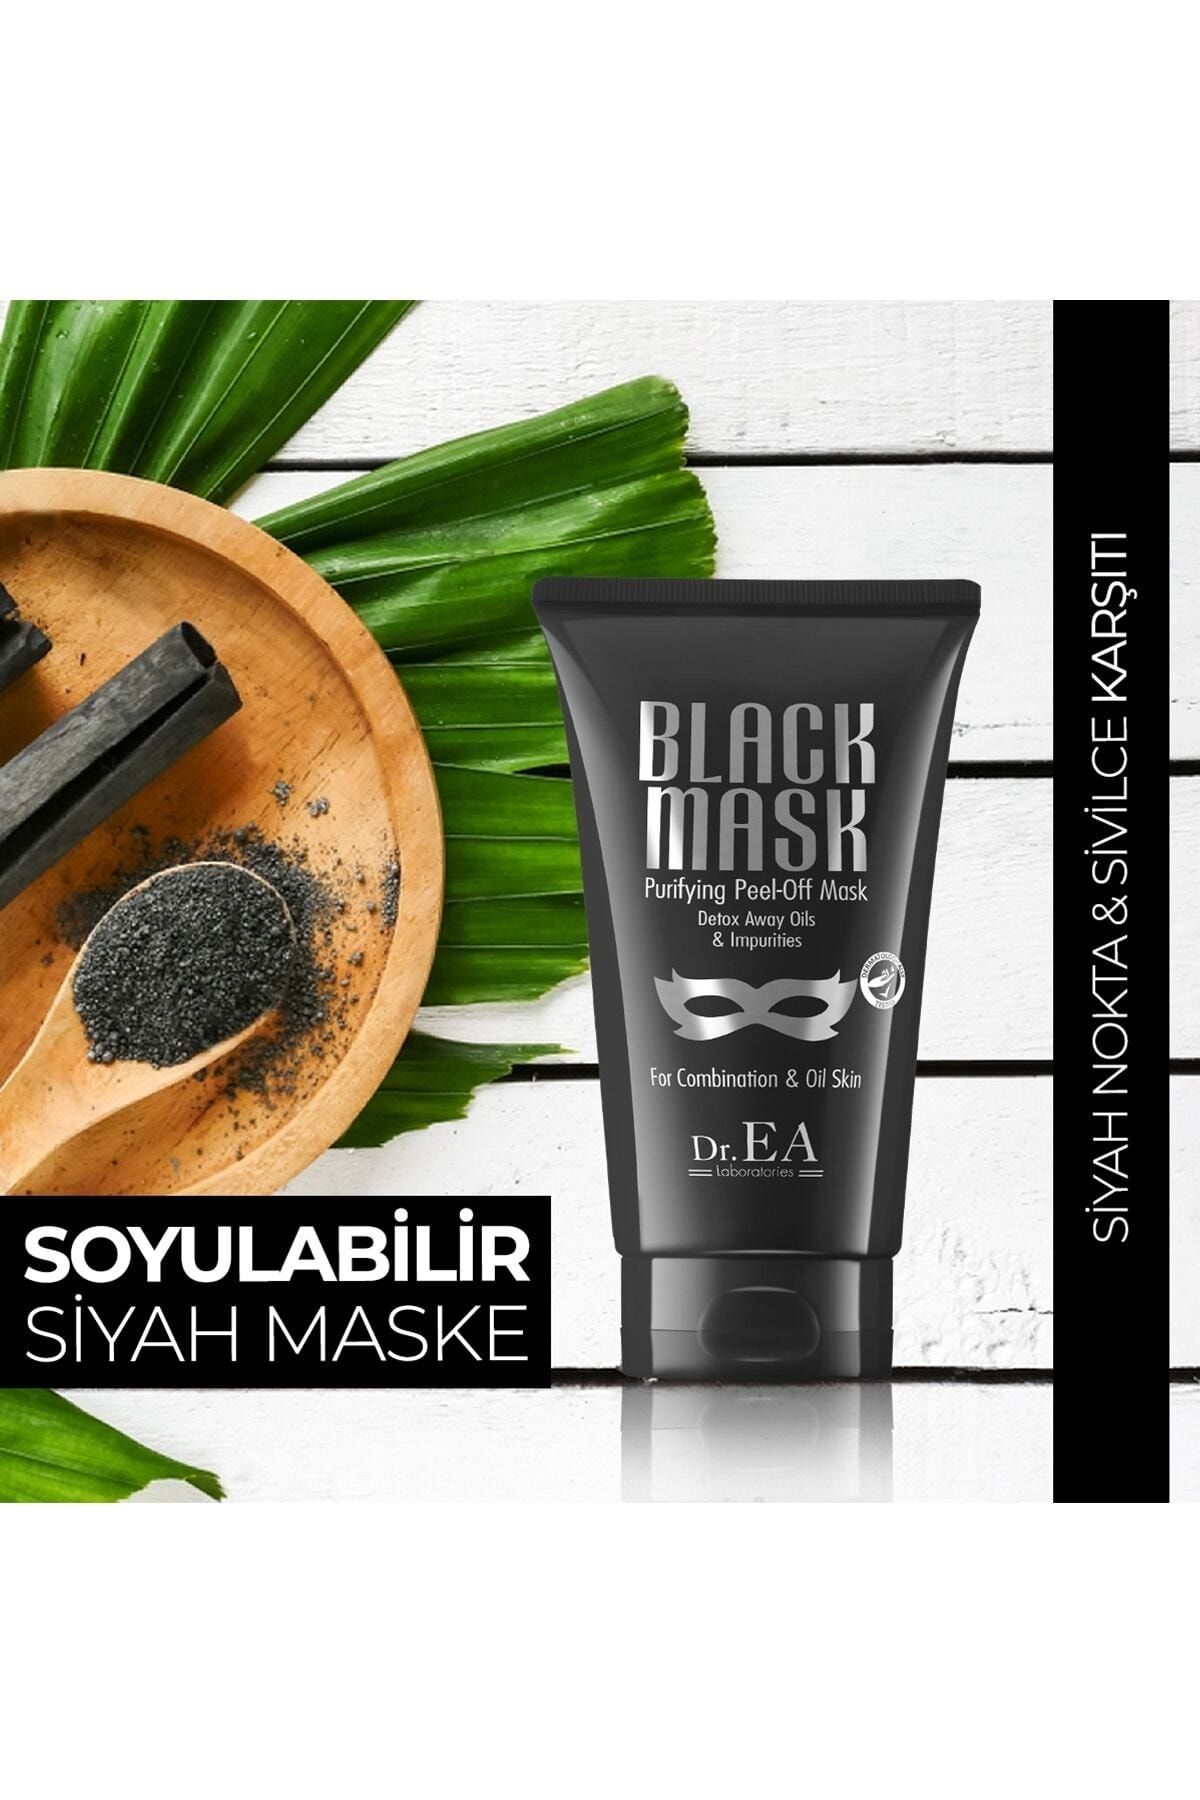 Soyulabilir Siyah Maske - Siyah Nokta Ve Sivilce Karşıtı 75ml